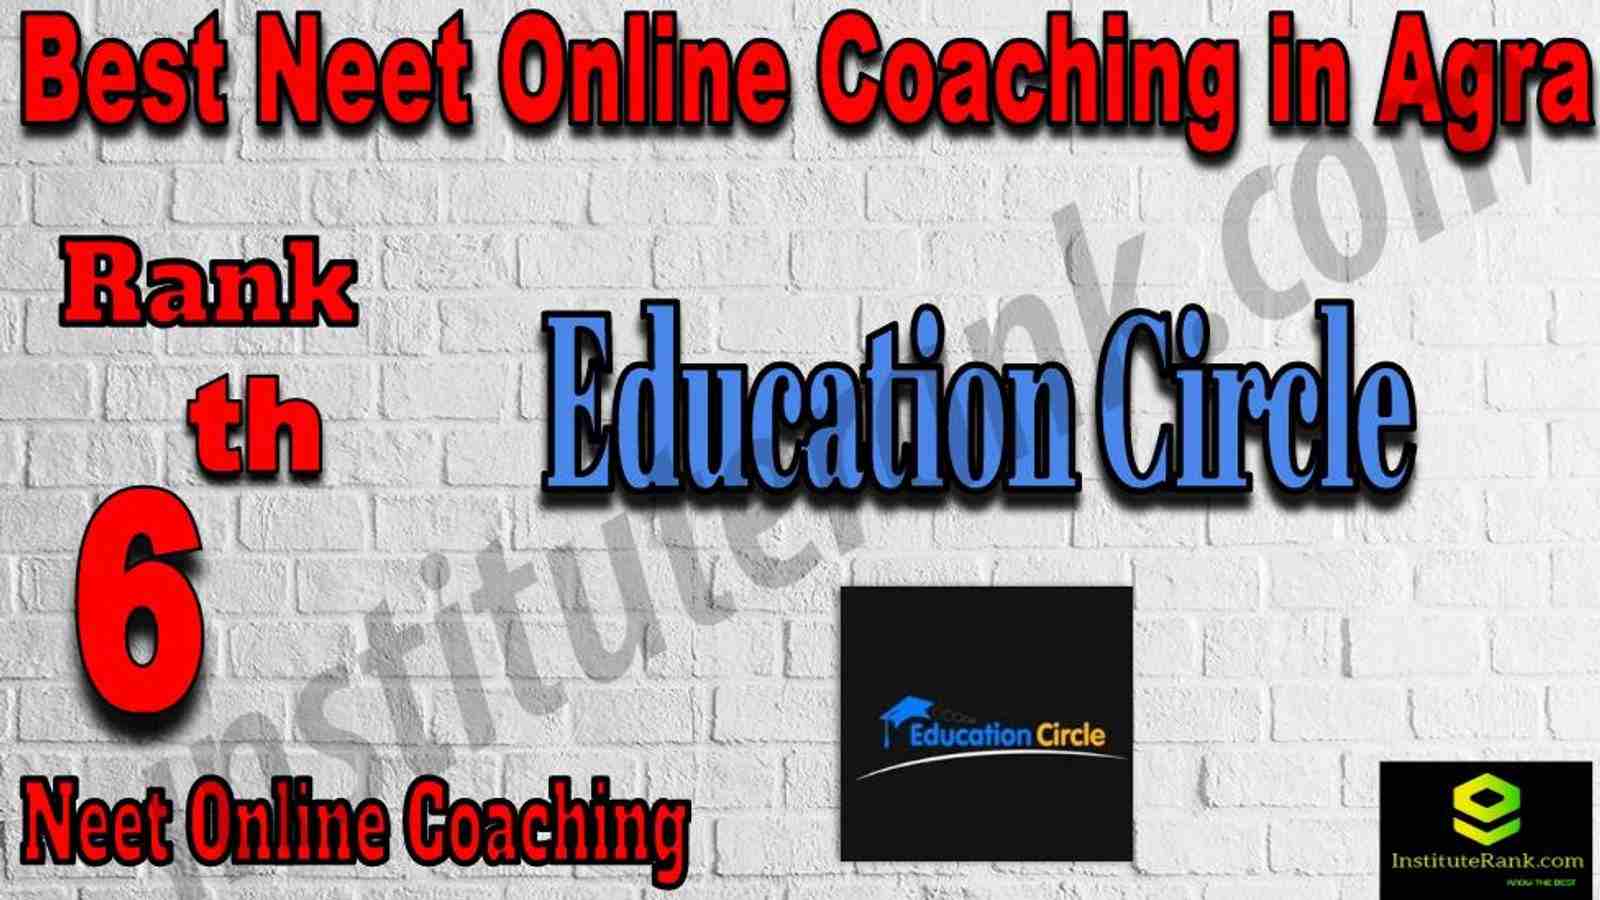 6th Best NEET Online Coaching in Agra